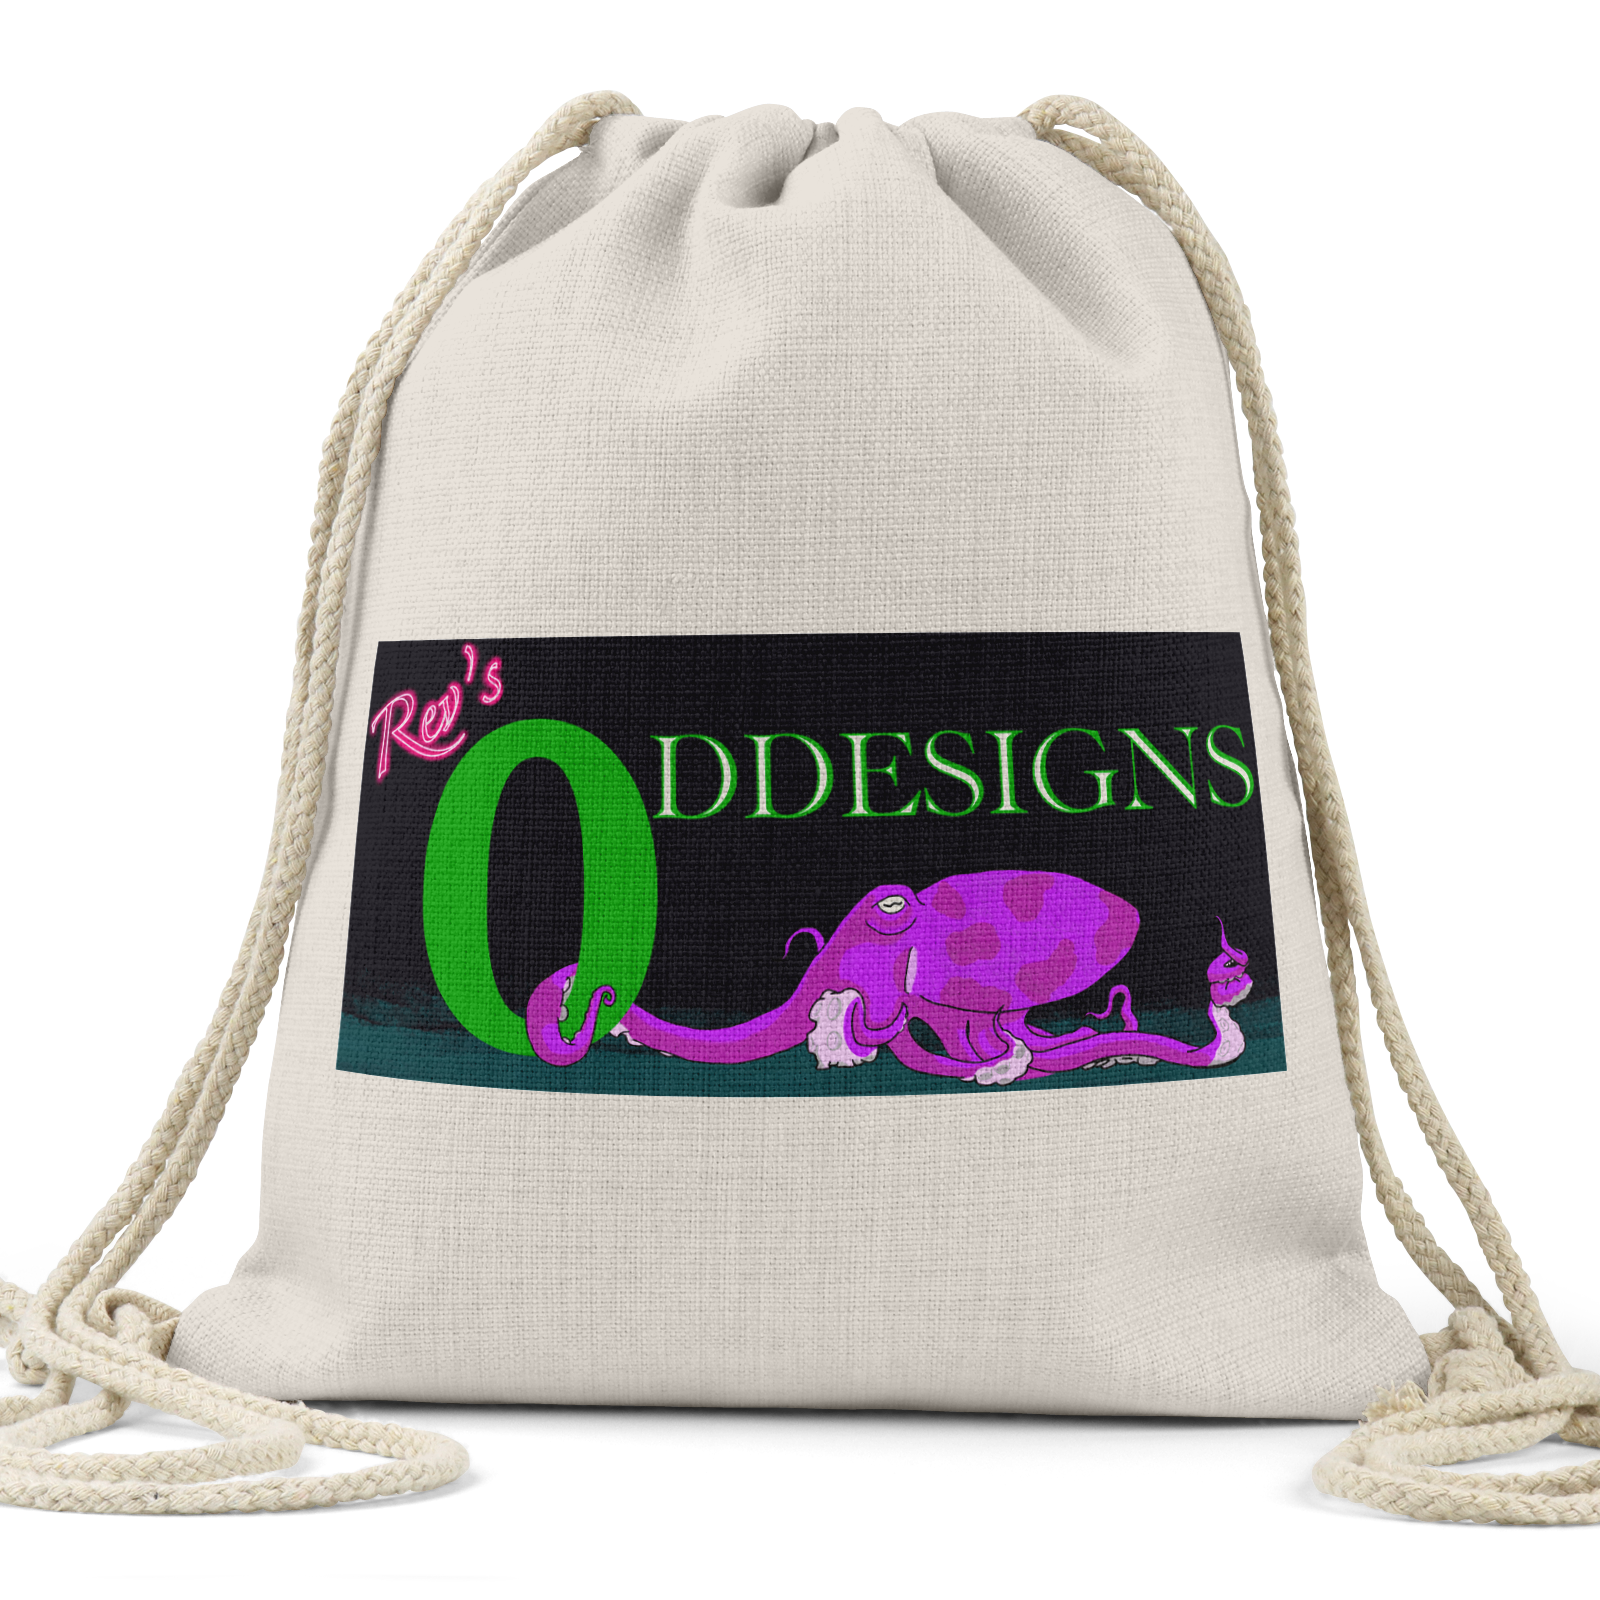 Rev’s Oddesigns Octo Logo - Linen Drawstring Bag